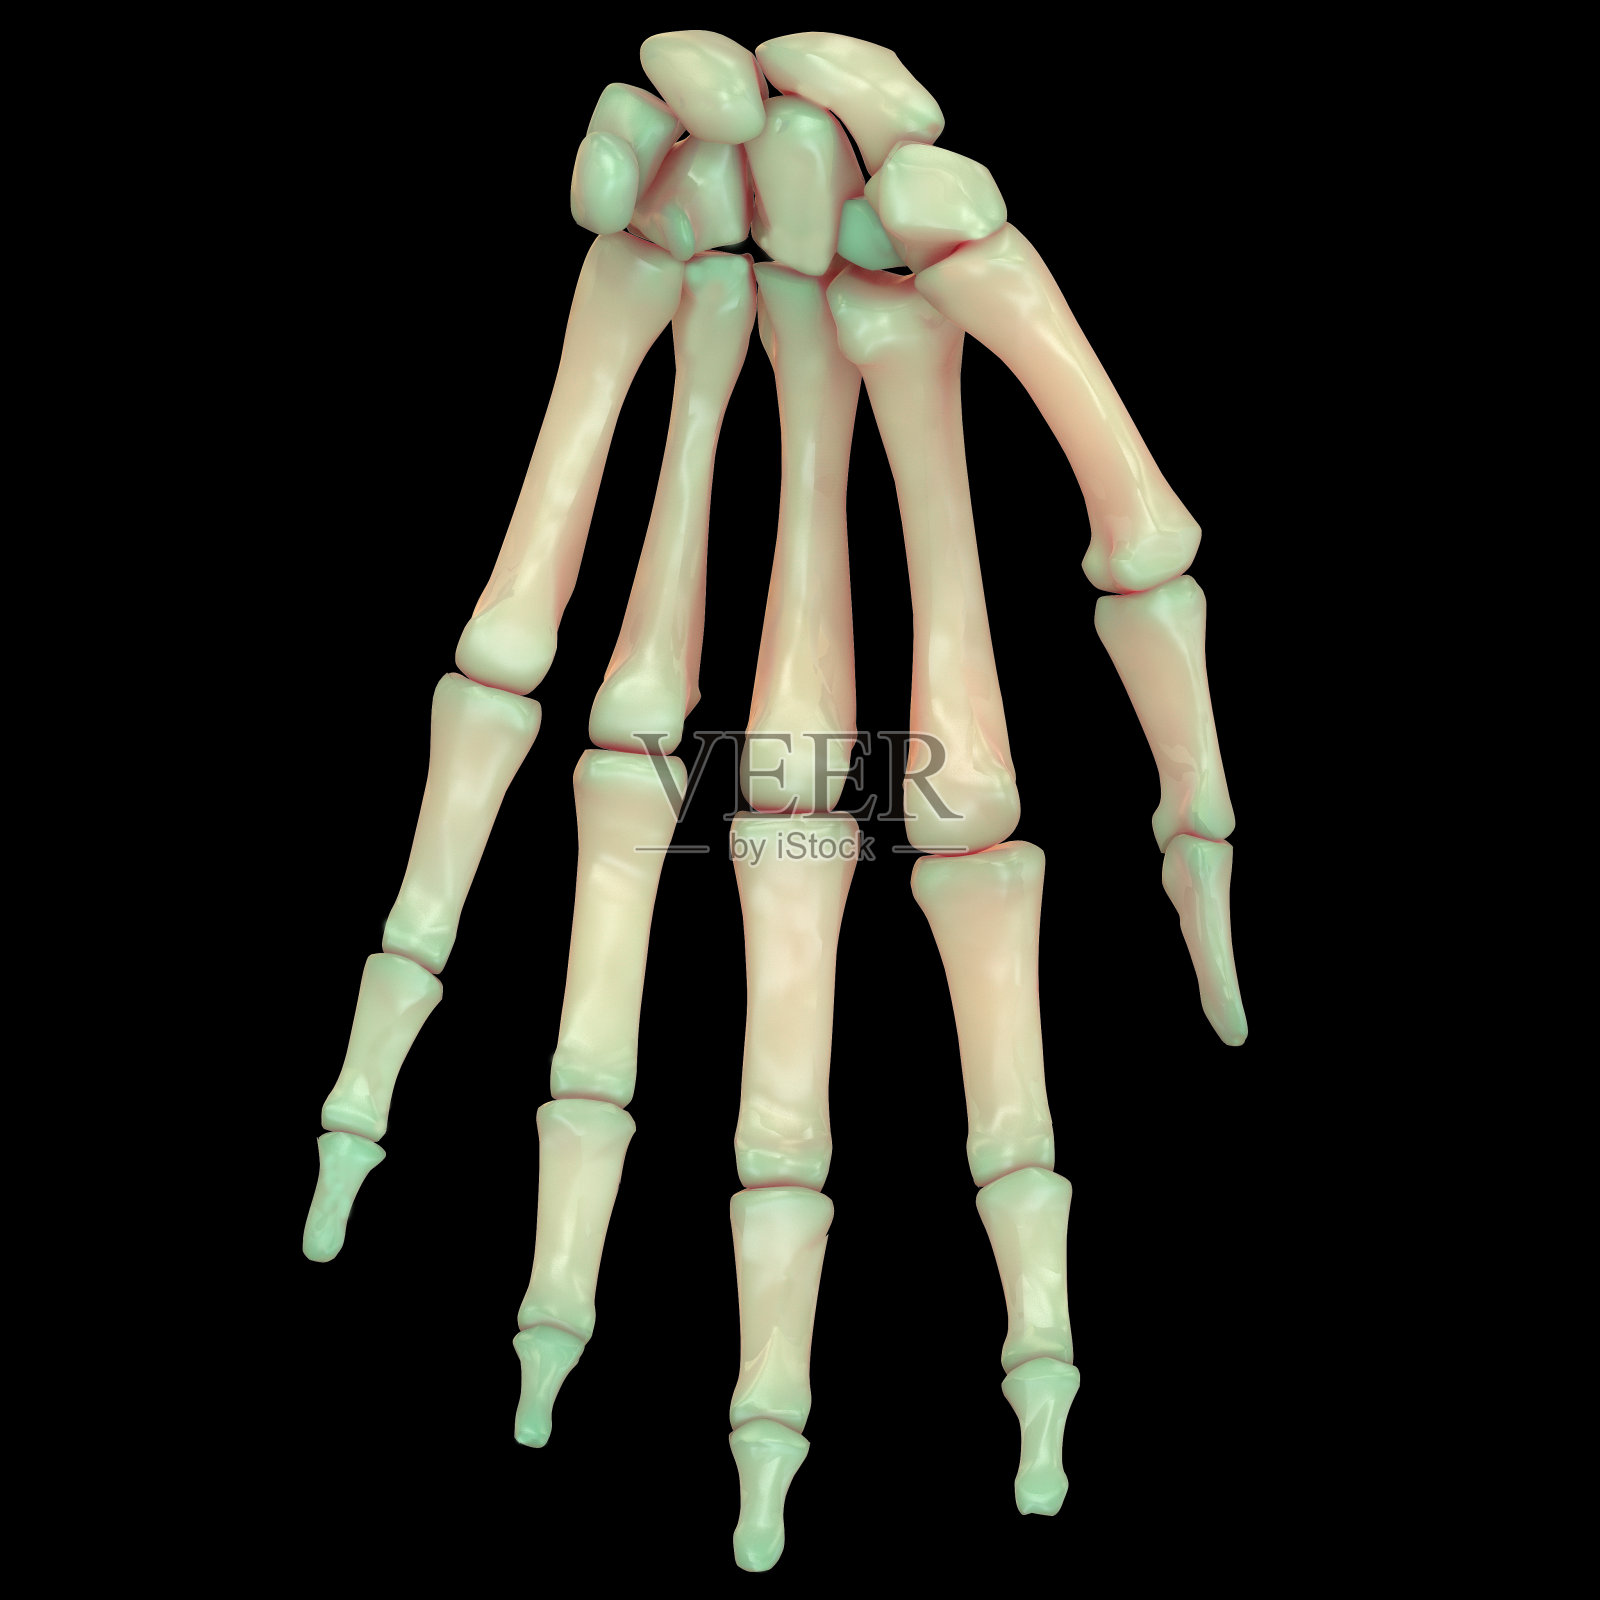 人体骨骼系统手指关节解剖学(前视图)设计元素图片